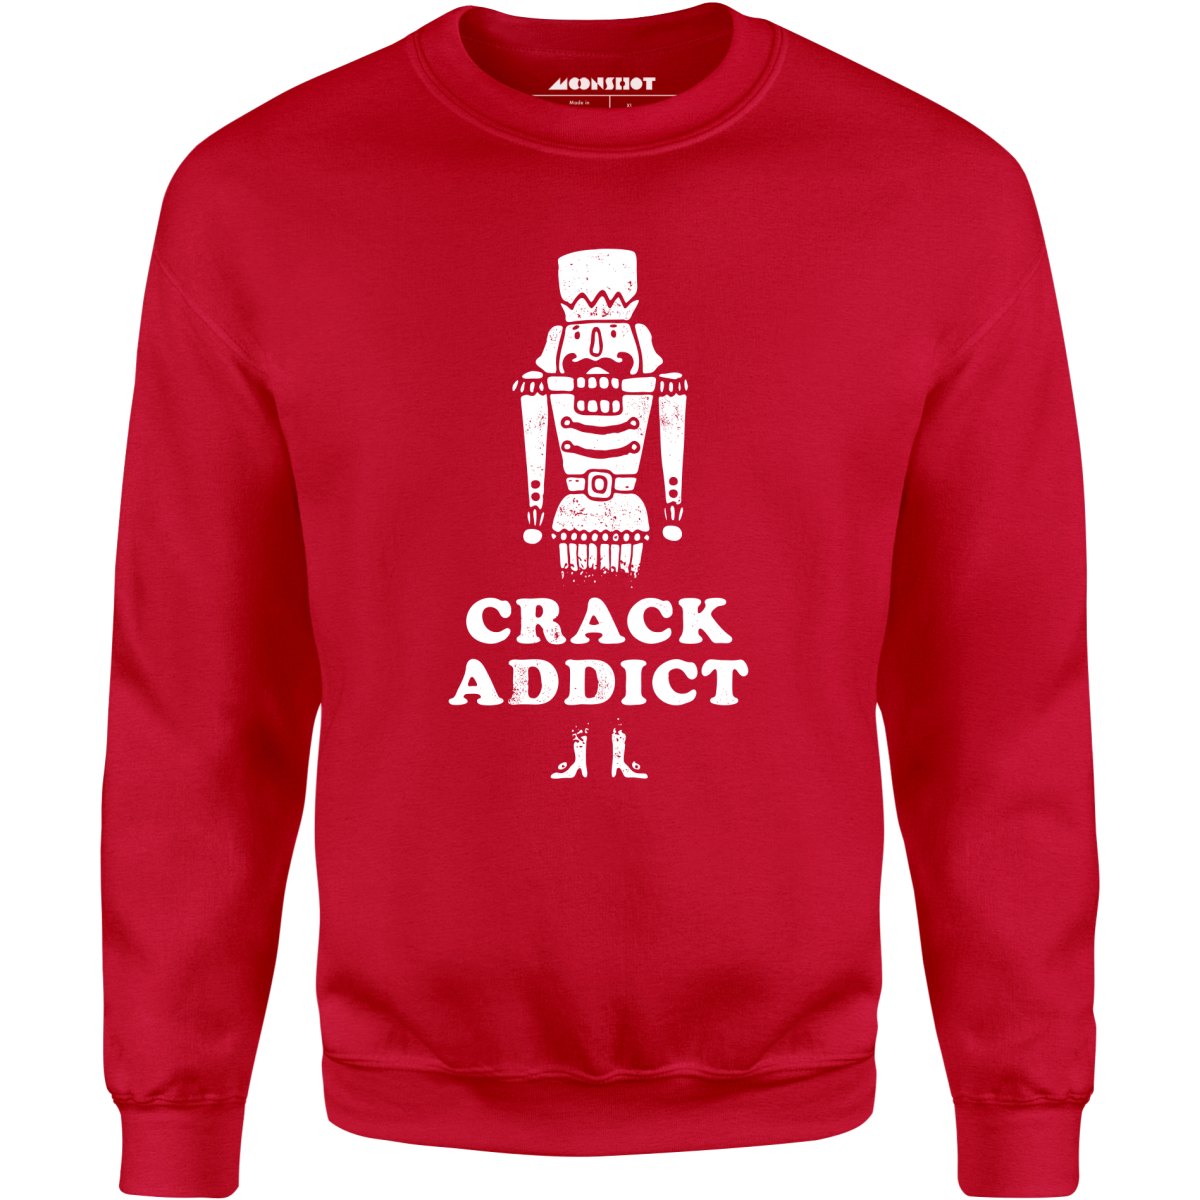 Crack Addict - Unisex Sweatshirt